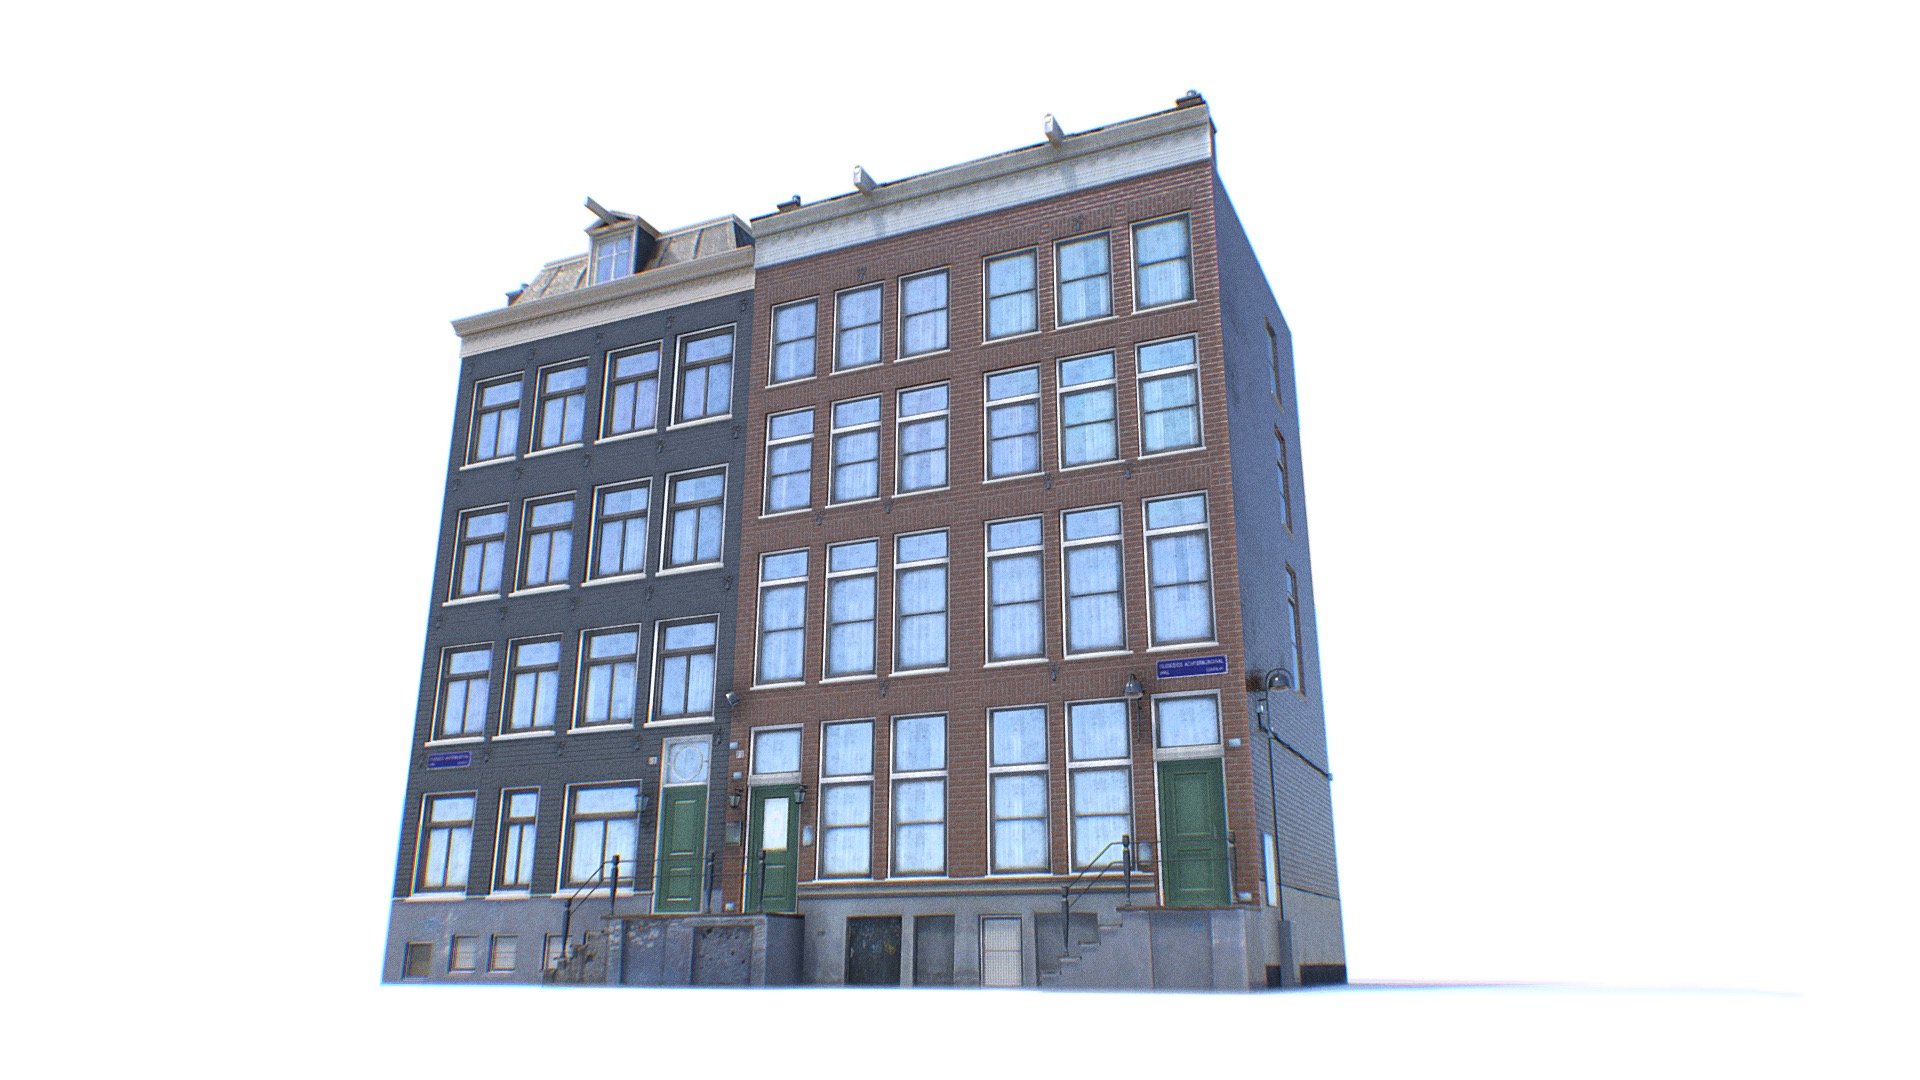 Amsterdam Classical Brick Building Realistic 3D Model - Amsterdam Building - Buy Royalty Free 3D model by Omni Studio 3D (@omny3d) 3d model